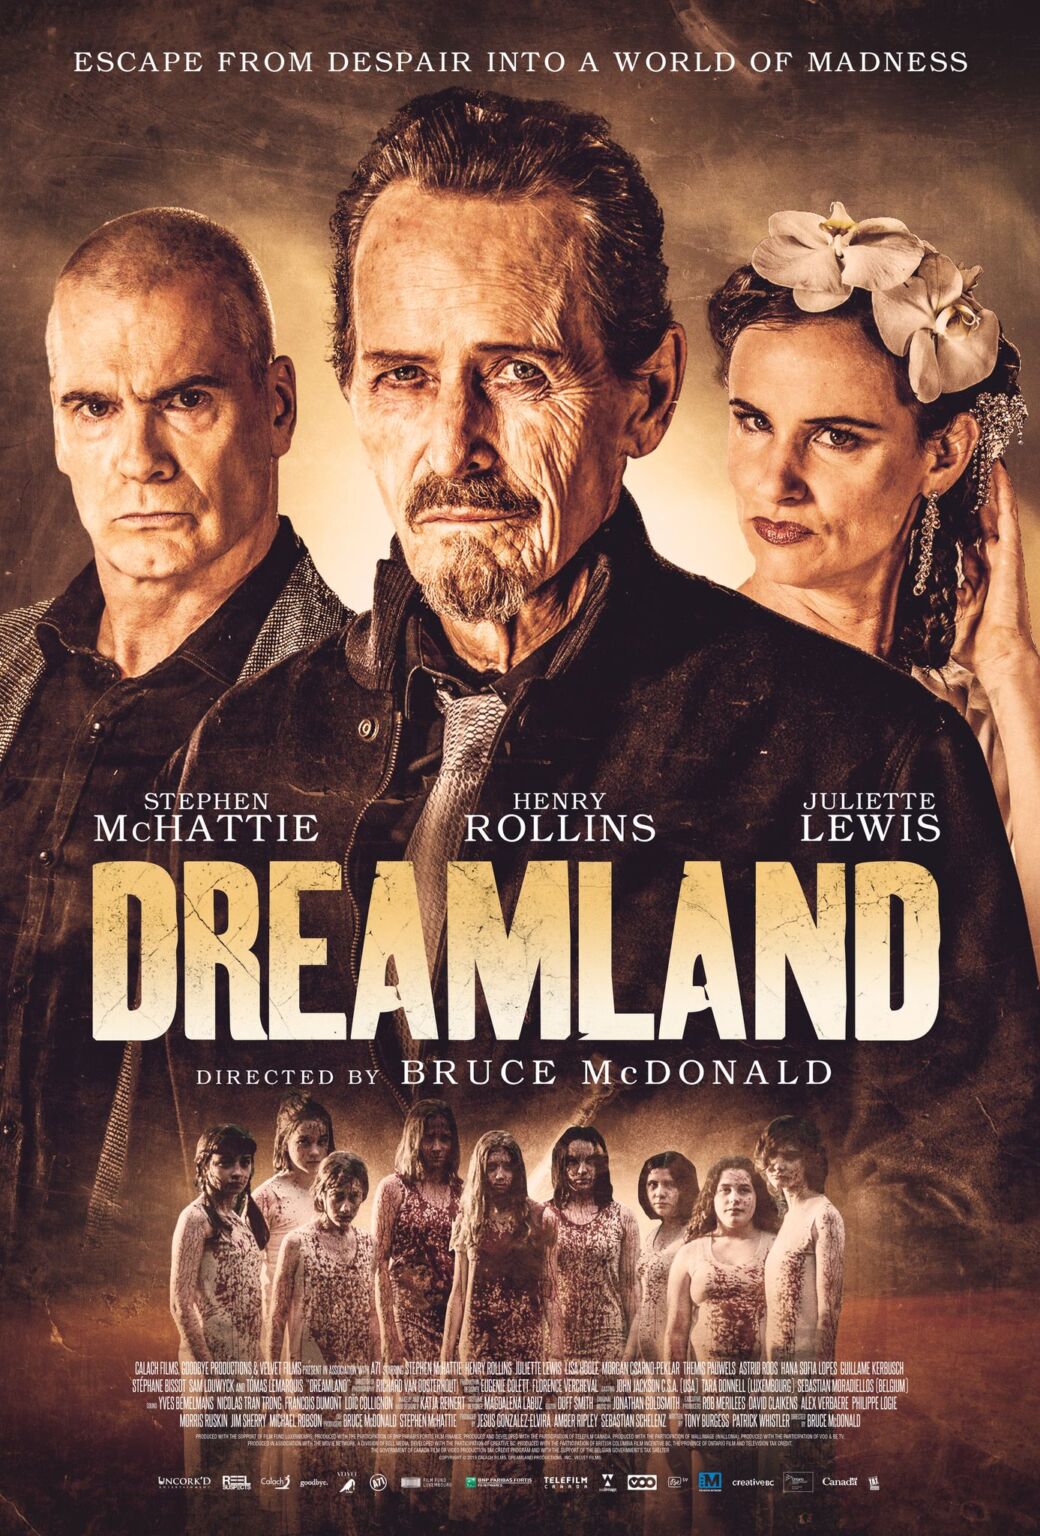 dreamland 2019 movie review